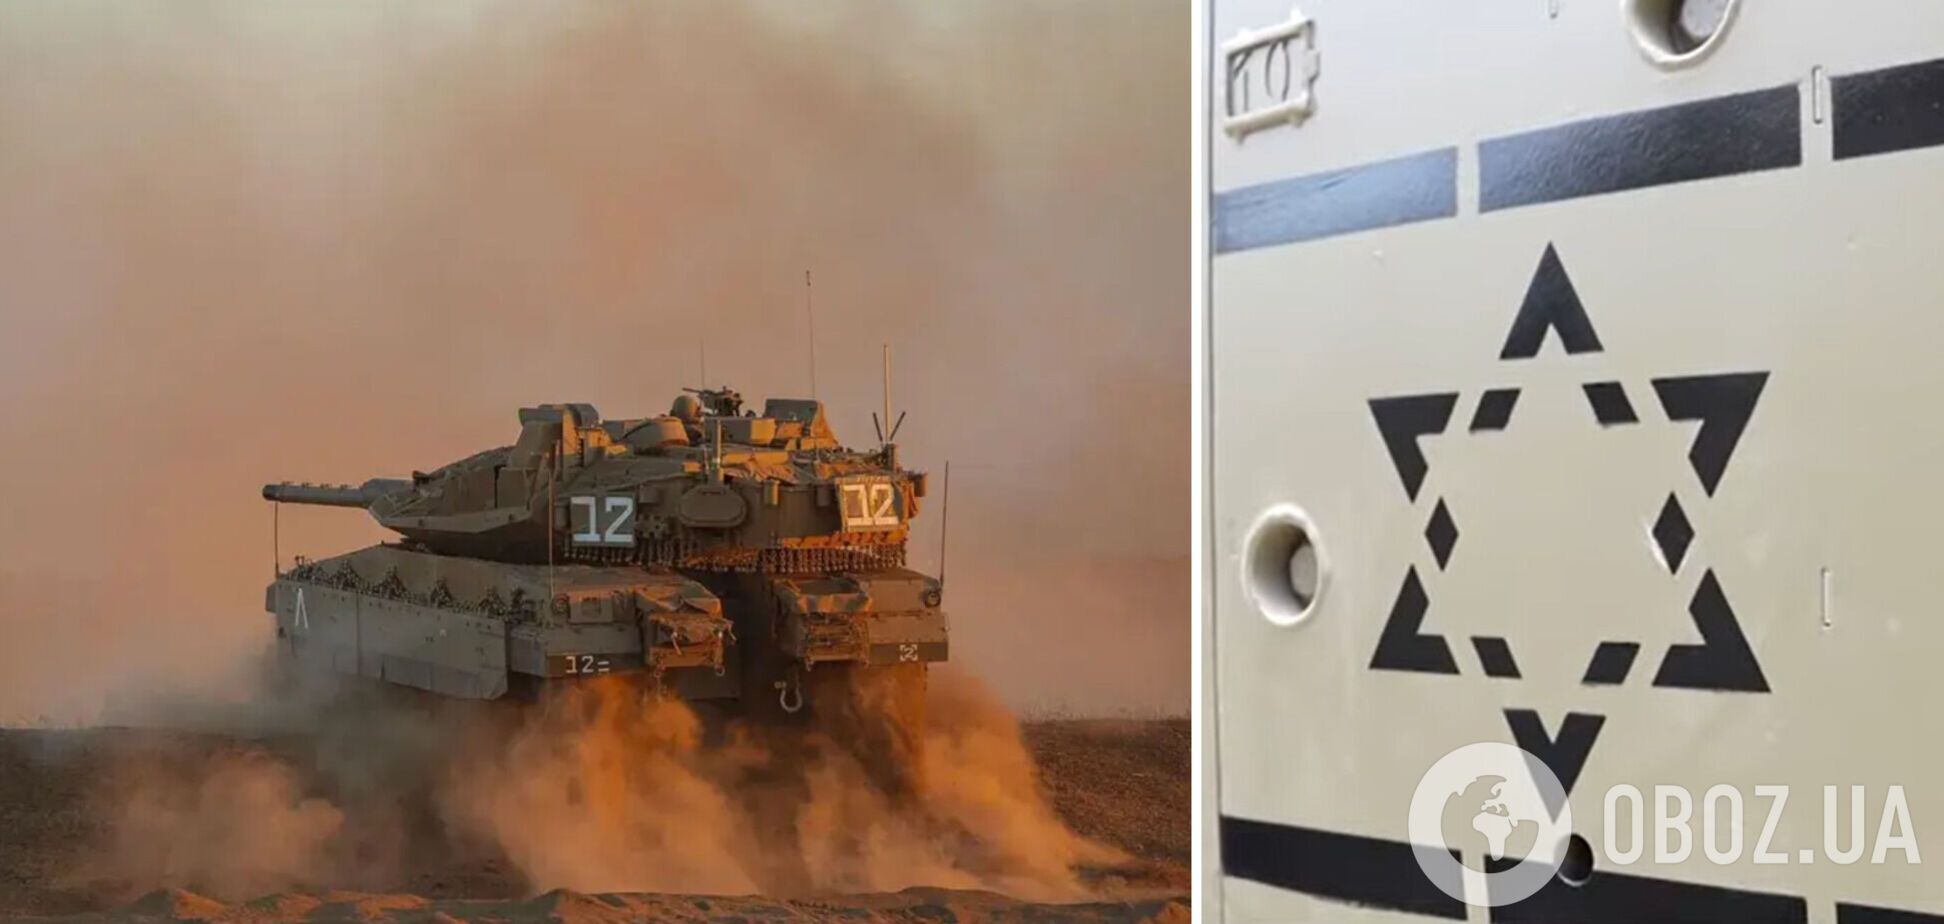 Израиль представил сверхсовременный танк нового поколения, оборудованный искусственным интеллектом. Фото и видео